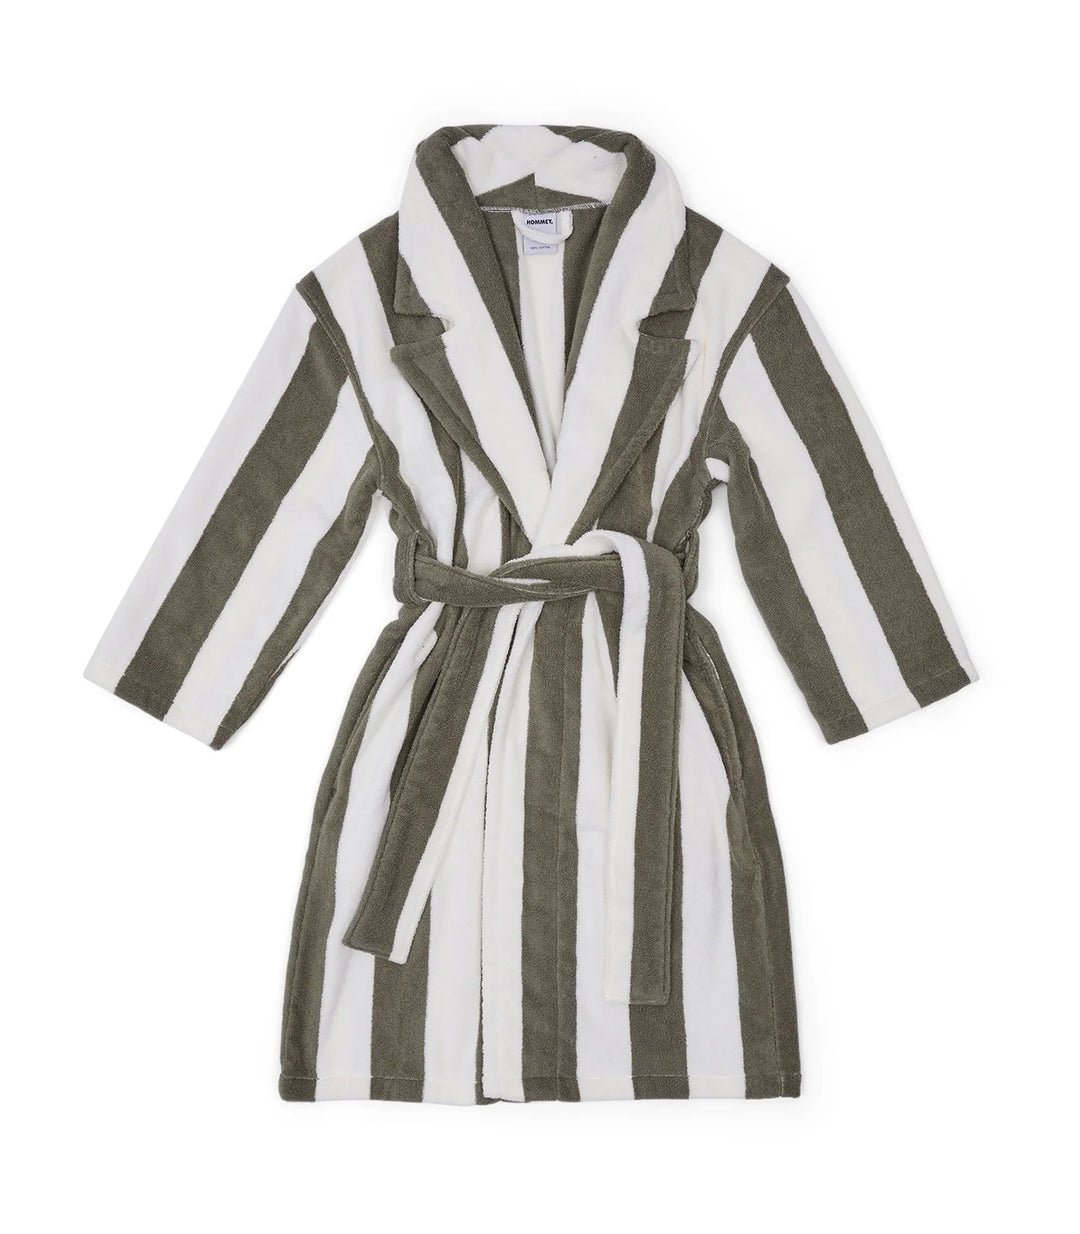 Hommey Robe - Matcha Stripes